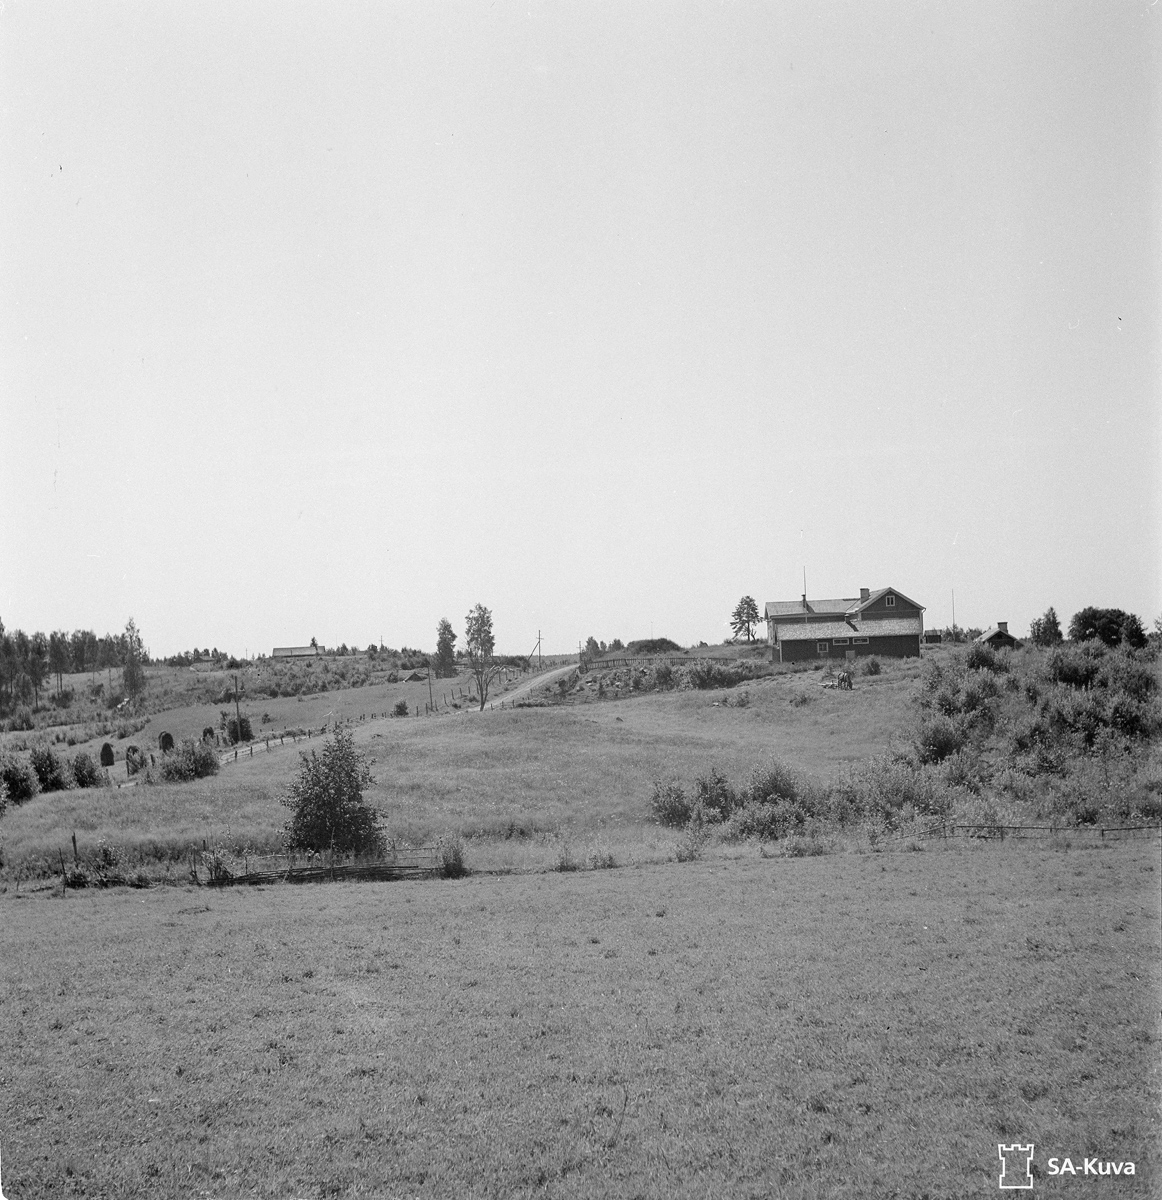 July 31, 1943. Havuvaara. Primary School's Hill